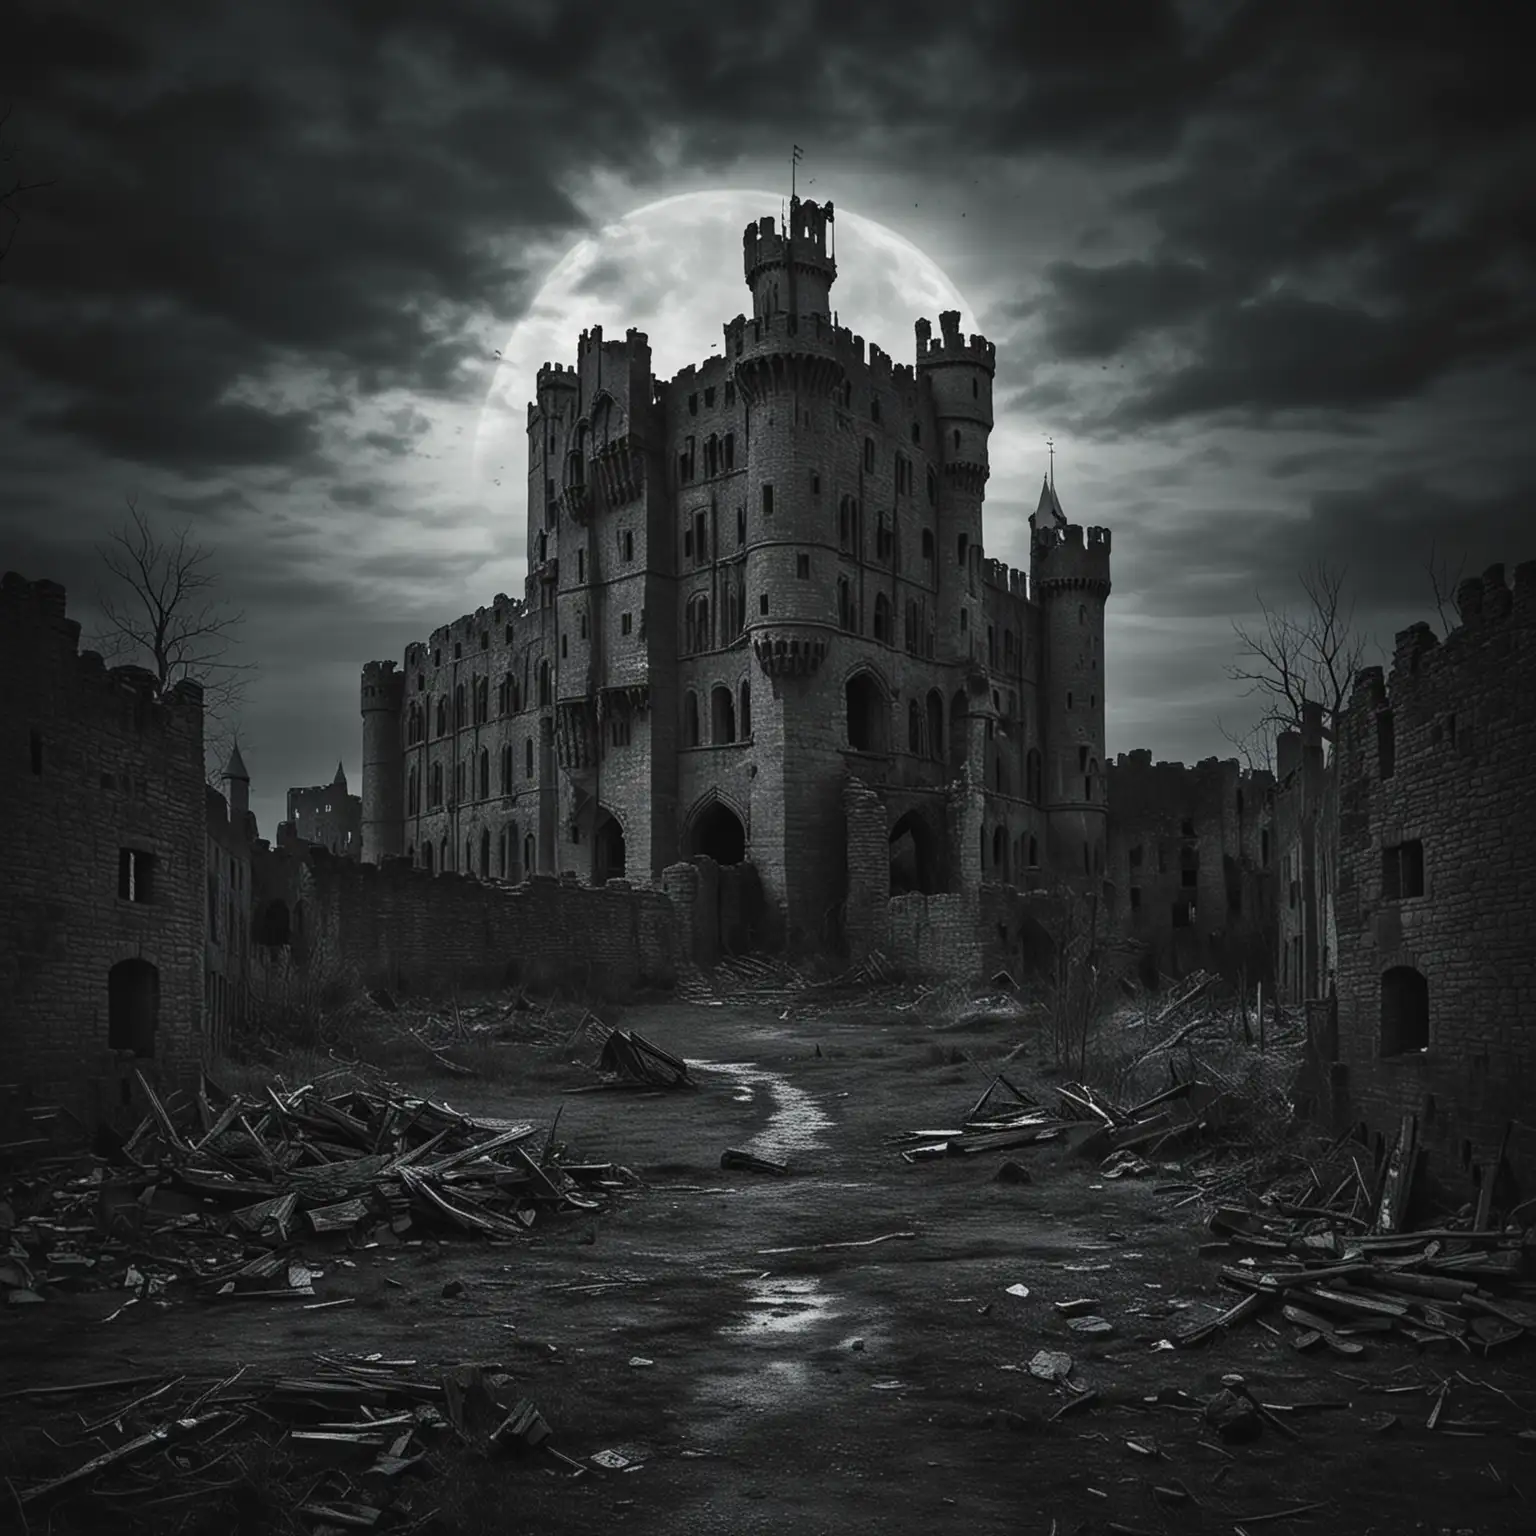 "Пустой замок" может представлять из себя мрачное и загадочное изображение древнего замка. На темном фоне виден контур замковой стены, и в ее центре — сам замок, погруженный во мрак. Замок может быть изображен в состоянии заброшенности и разрушенности, с обветшалыми башнями и обломками стен, что создает атмосферу таинственности и утраты былого величия